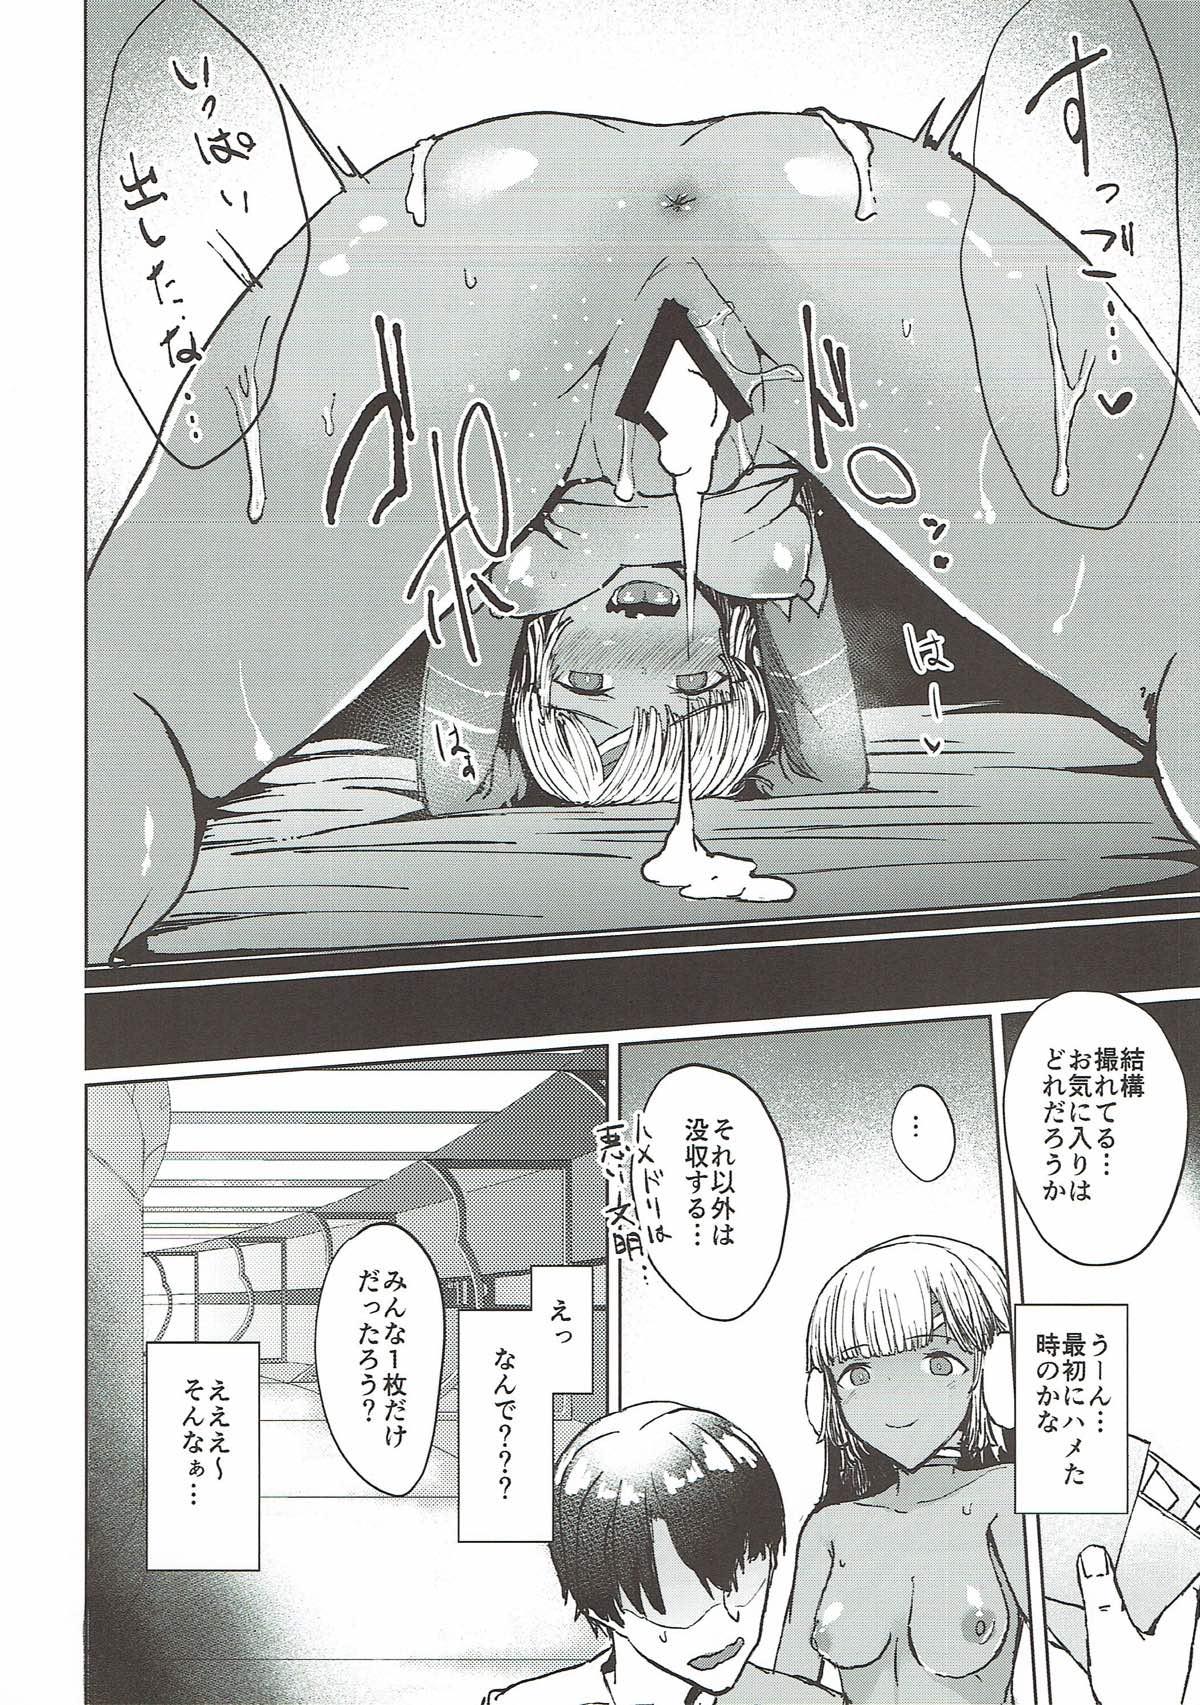 Blackwoman Present Hoshii Mono ga nai? Kore Igai... Naraba Shikata ga Nai - Fate grand order Freckles - Page 11